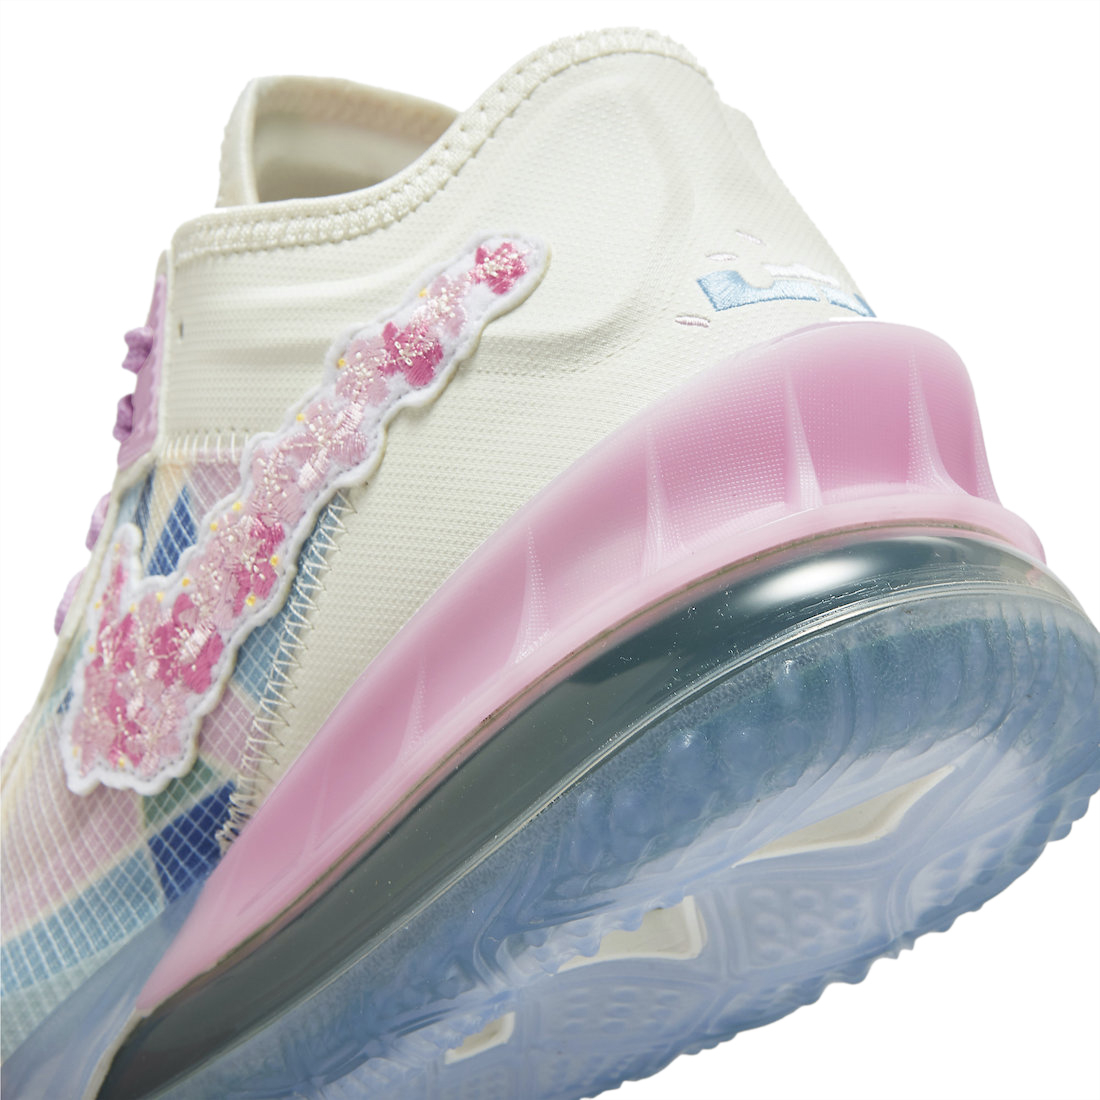 atmos x Nike LeBron 18 Low Cherry Blossom CV7564-101